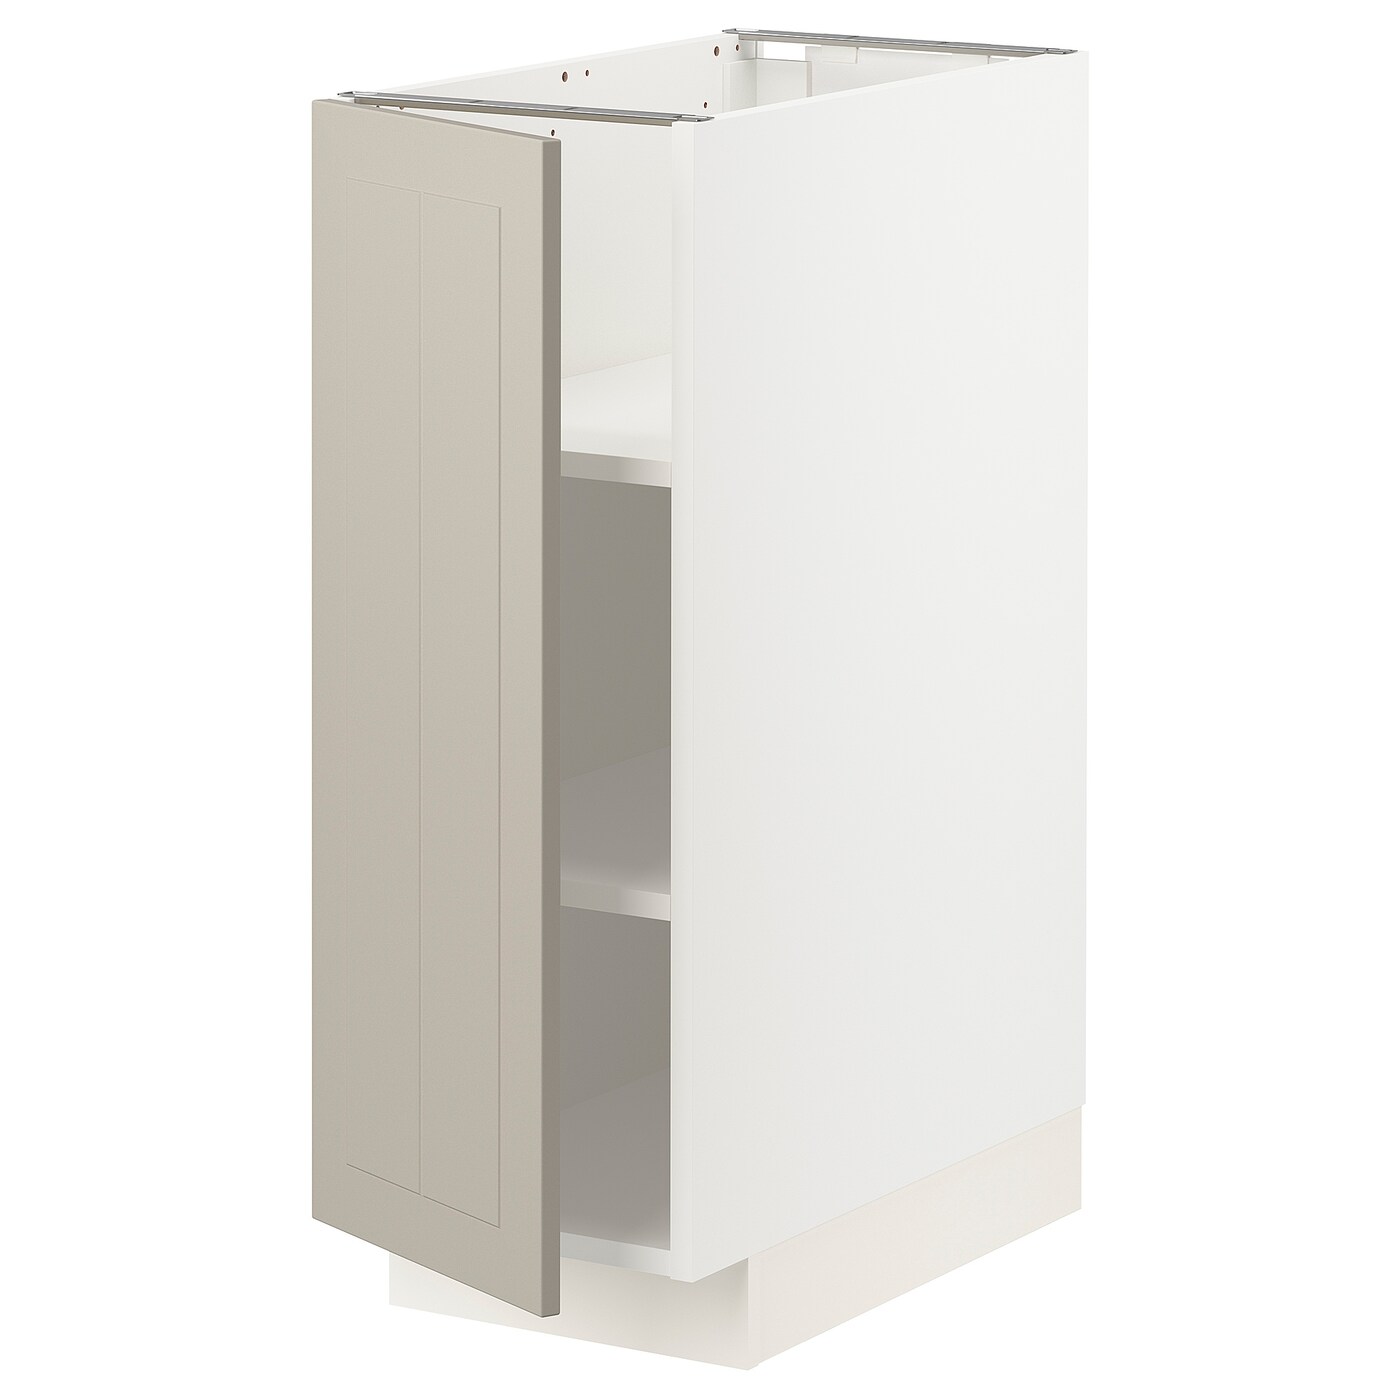 Напольный кухонный шкаф  - IKEA METOD MAXIMERA, 88x62x30см, белый/бежевый, МЕТОД МАКСИМЕРА ИКЕА